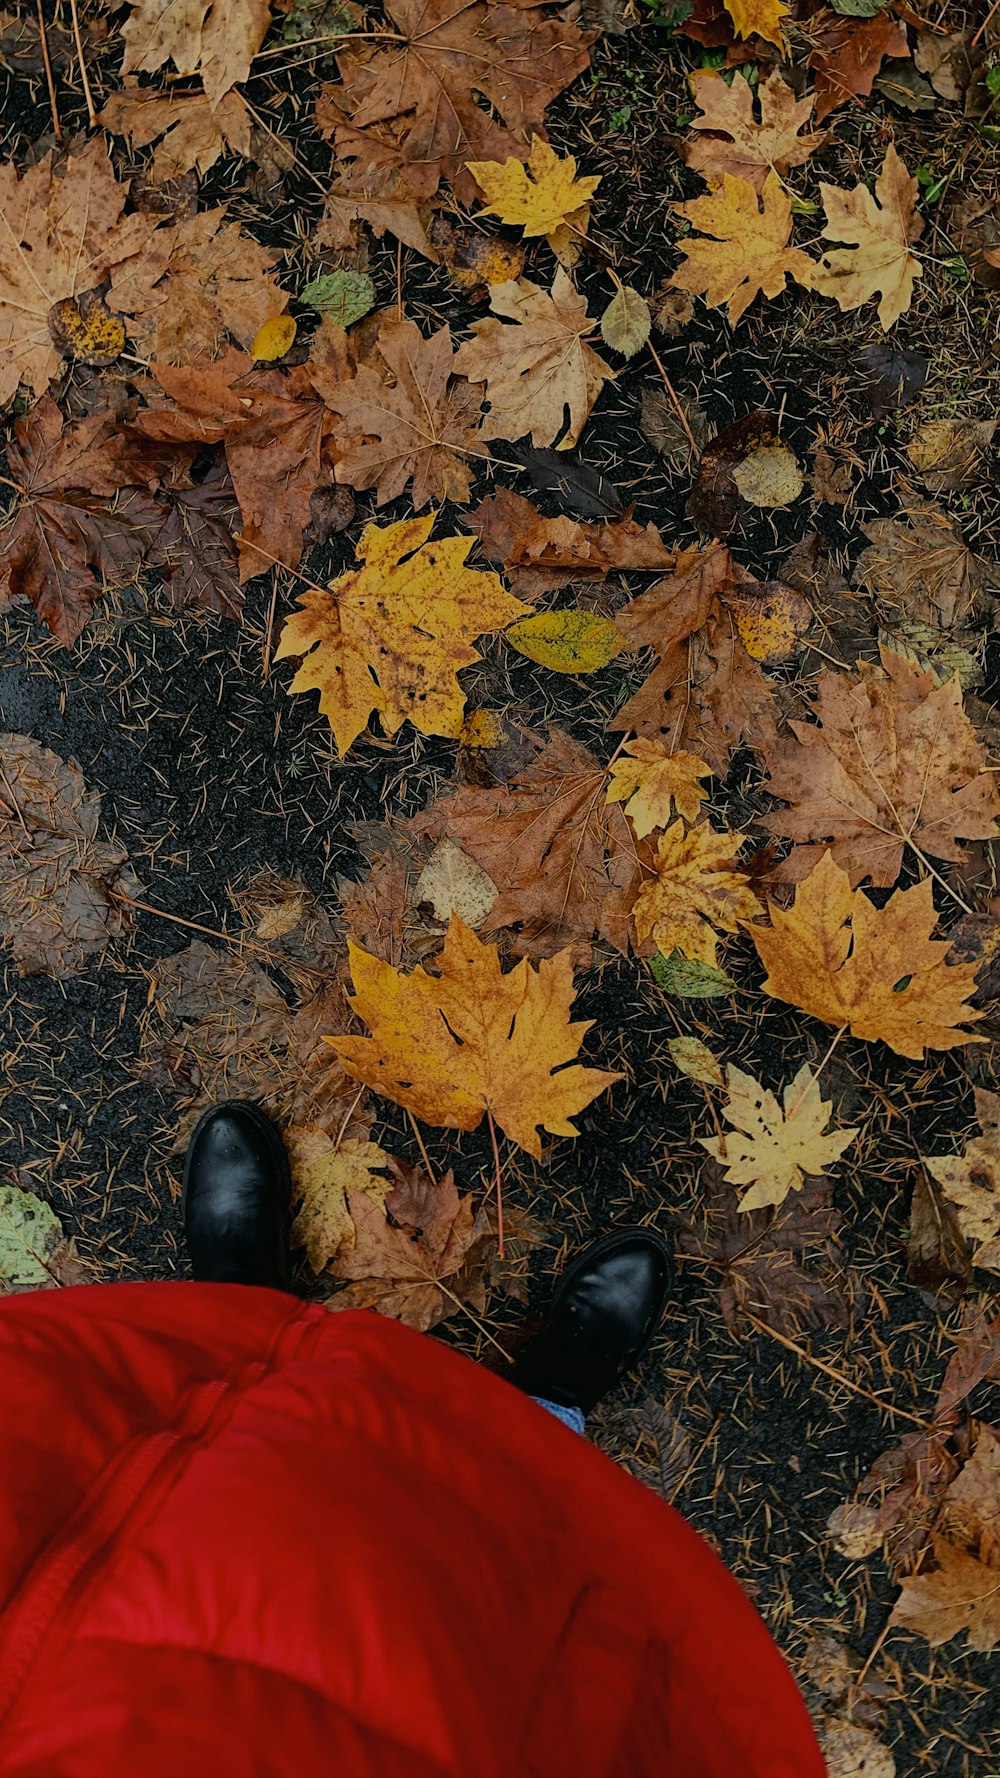 Persona con pantalones rojos y zapatos de cuero negro de pie sobre hojas secas